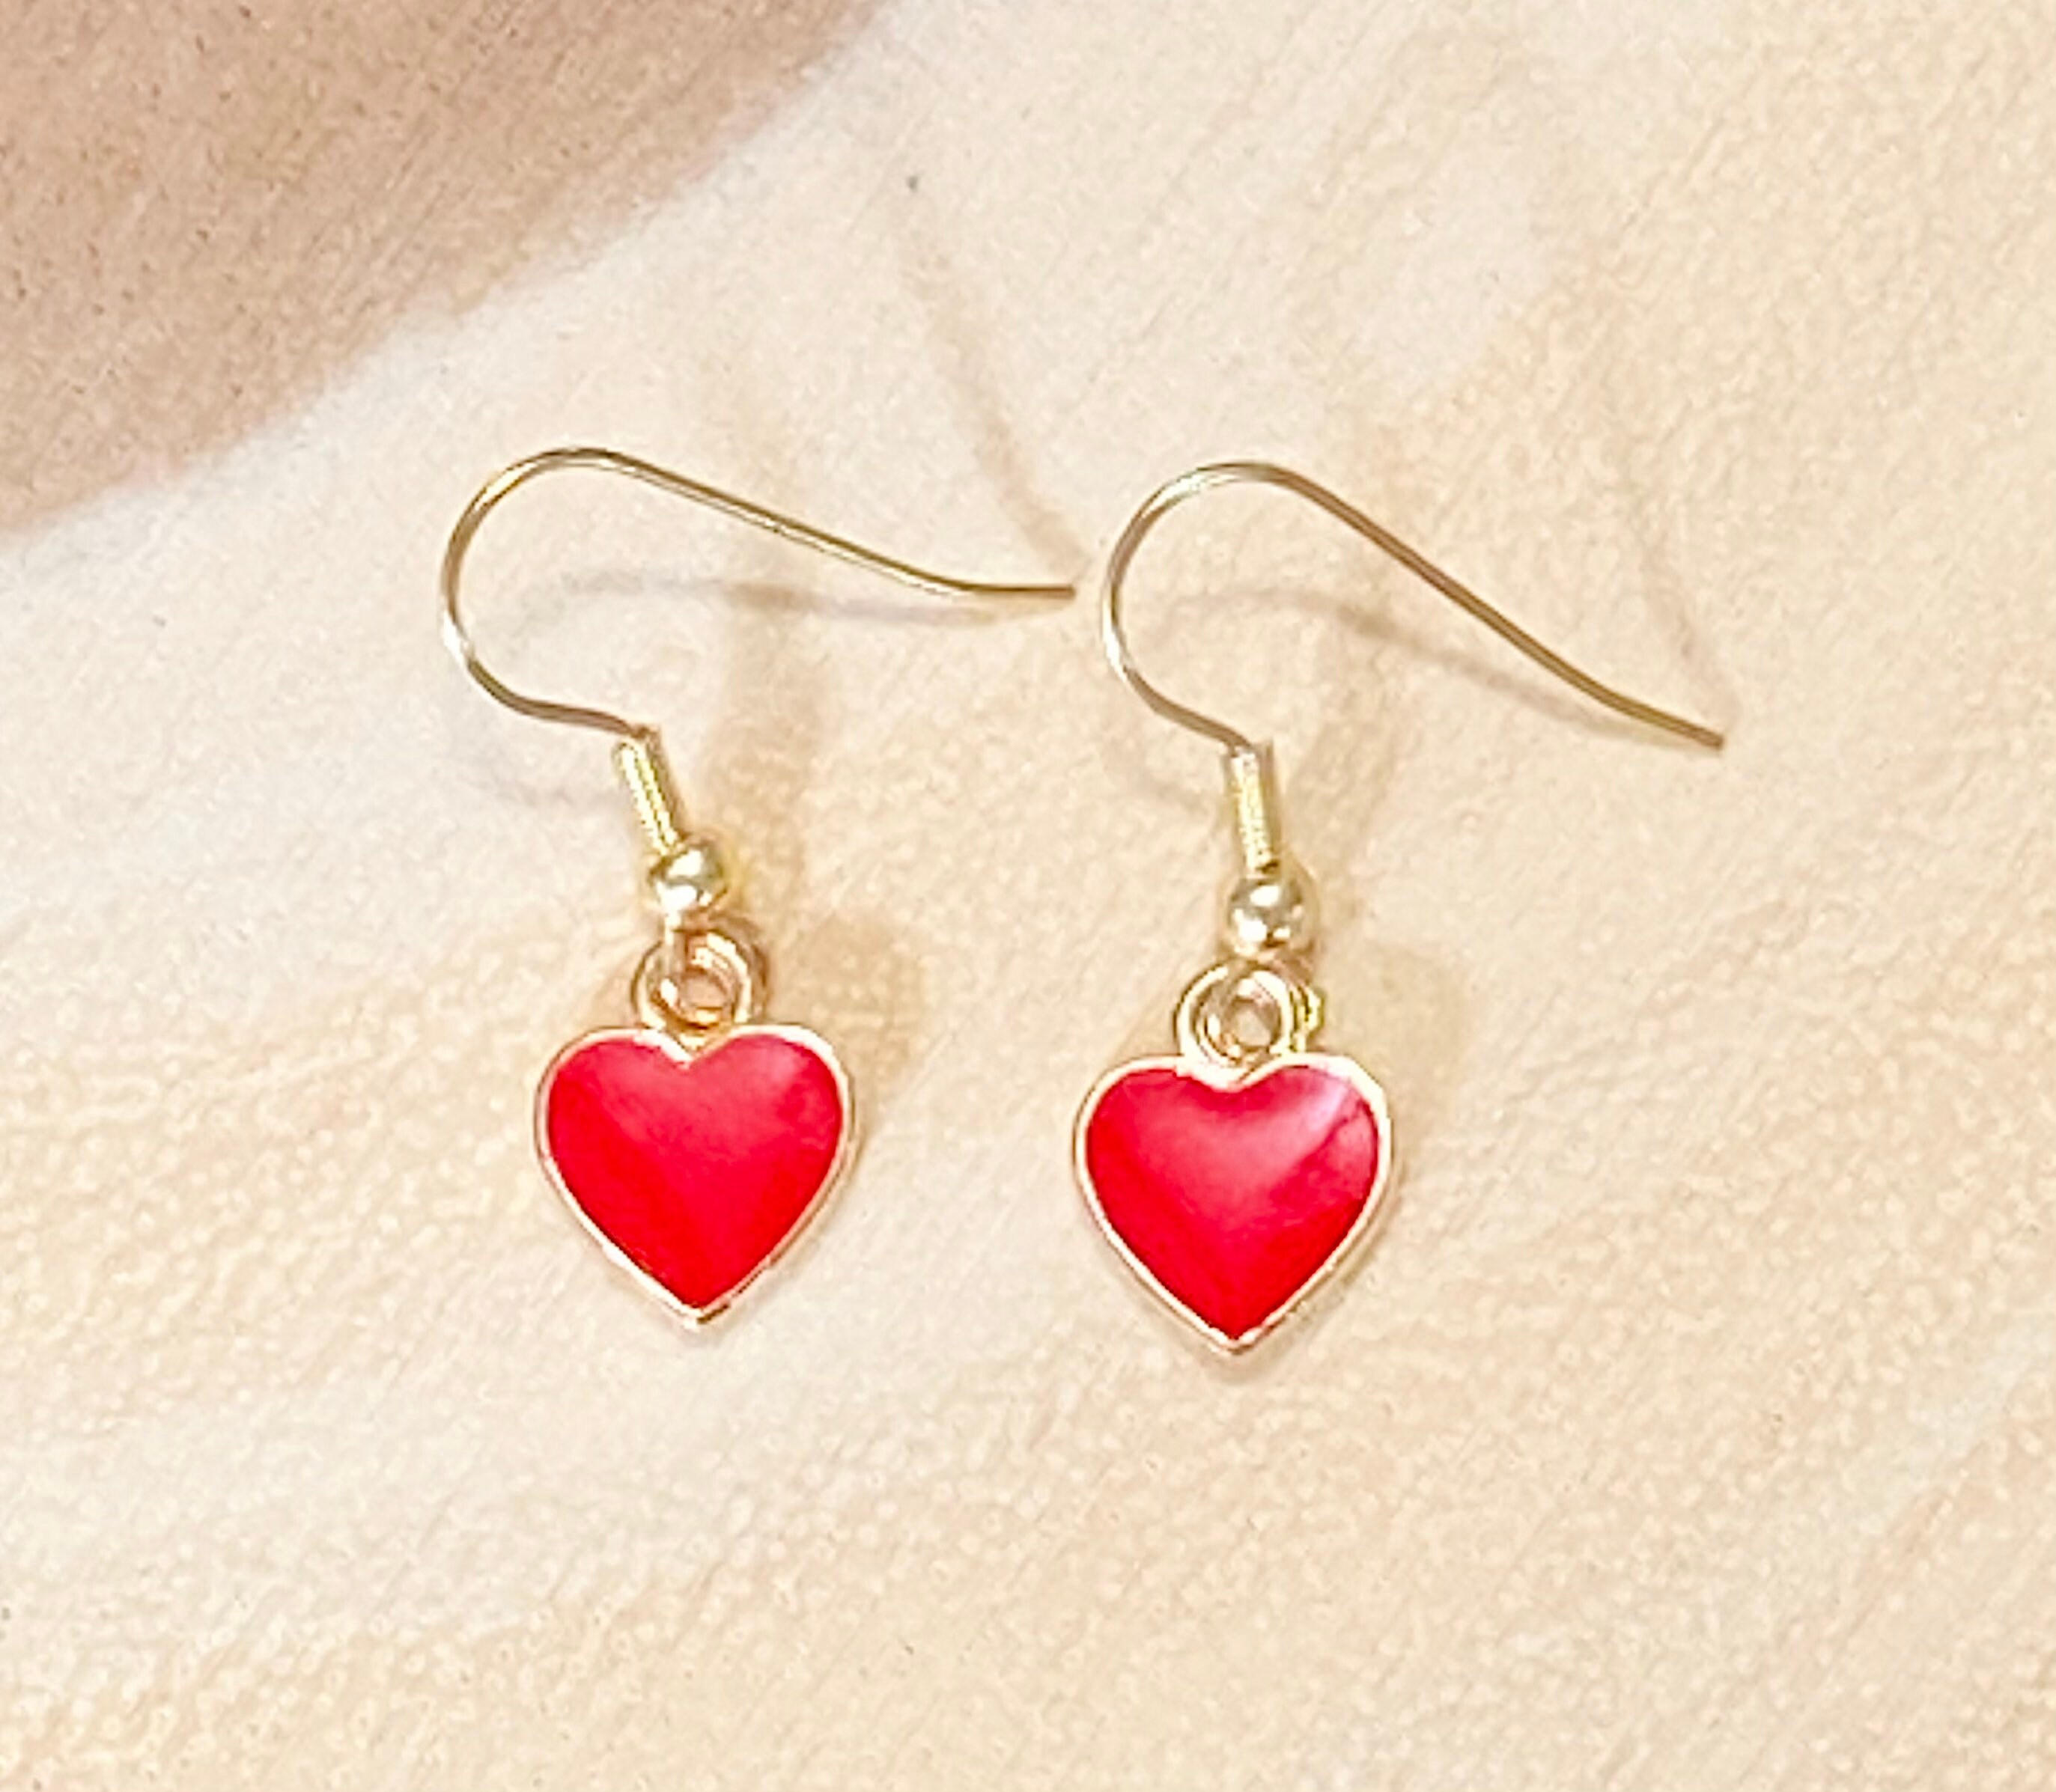 Red Heart Earrings Heart Earrings Dangle Red Heart Earrings | Etsy